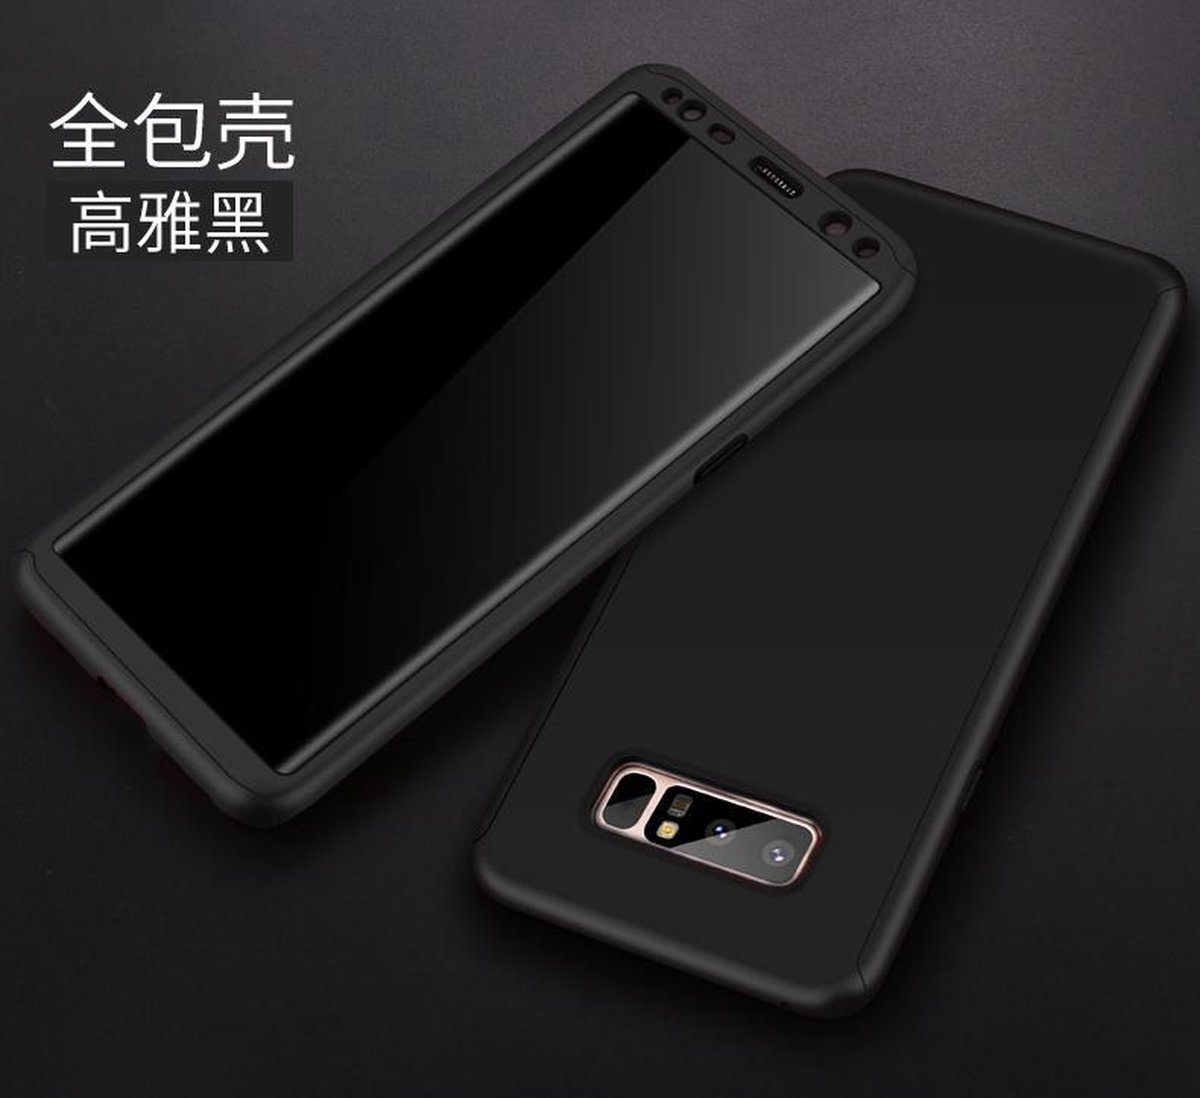 360-graden Ultra Slim Frosting Beschermhoesje Set voor Galaxy Note 9 _ Zwart